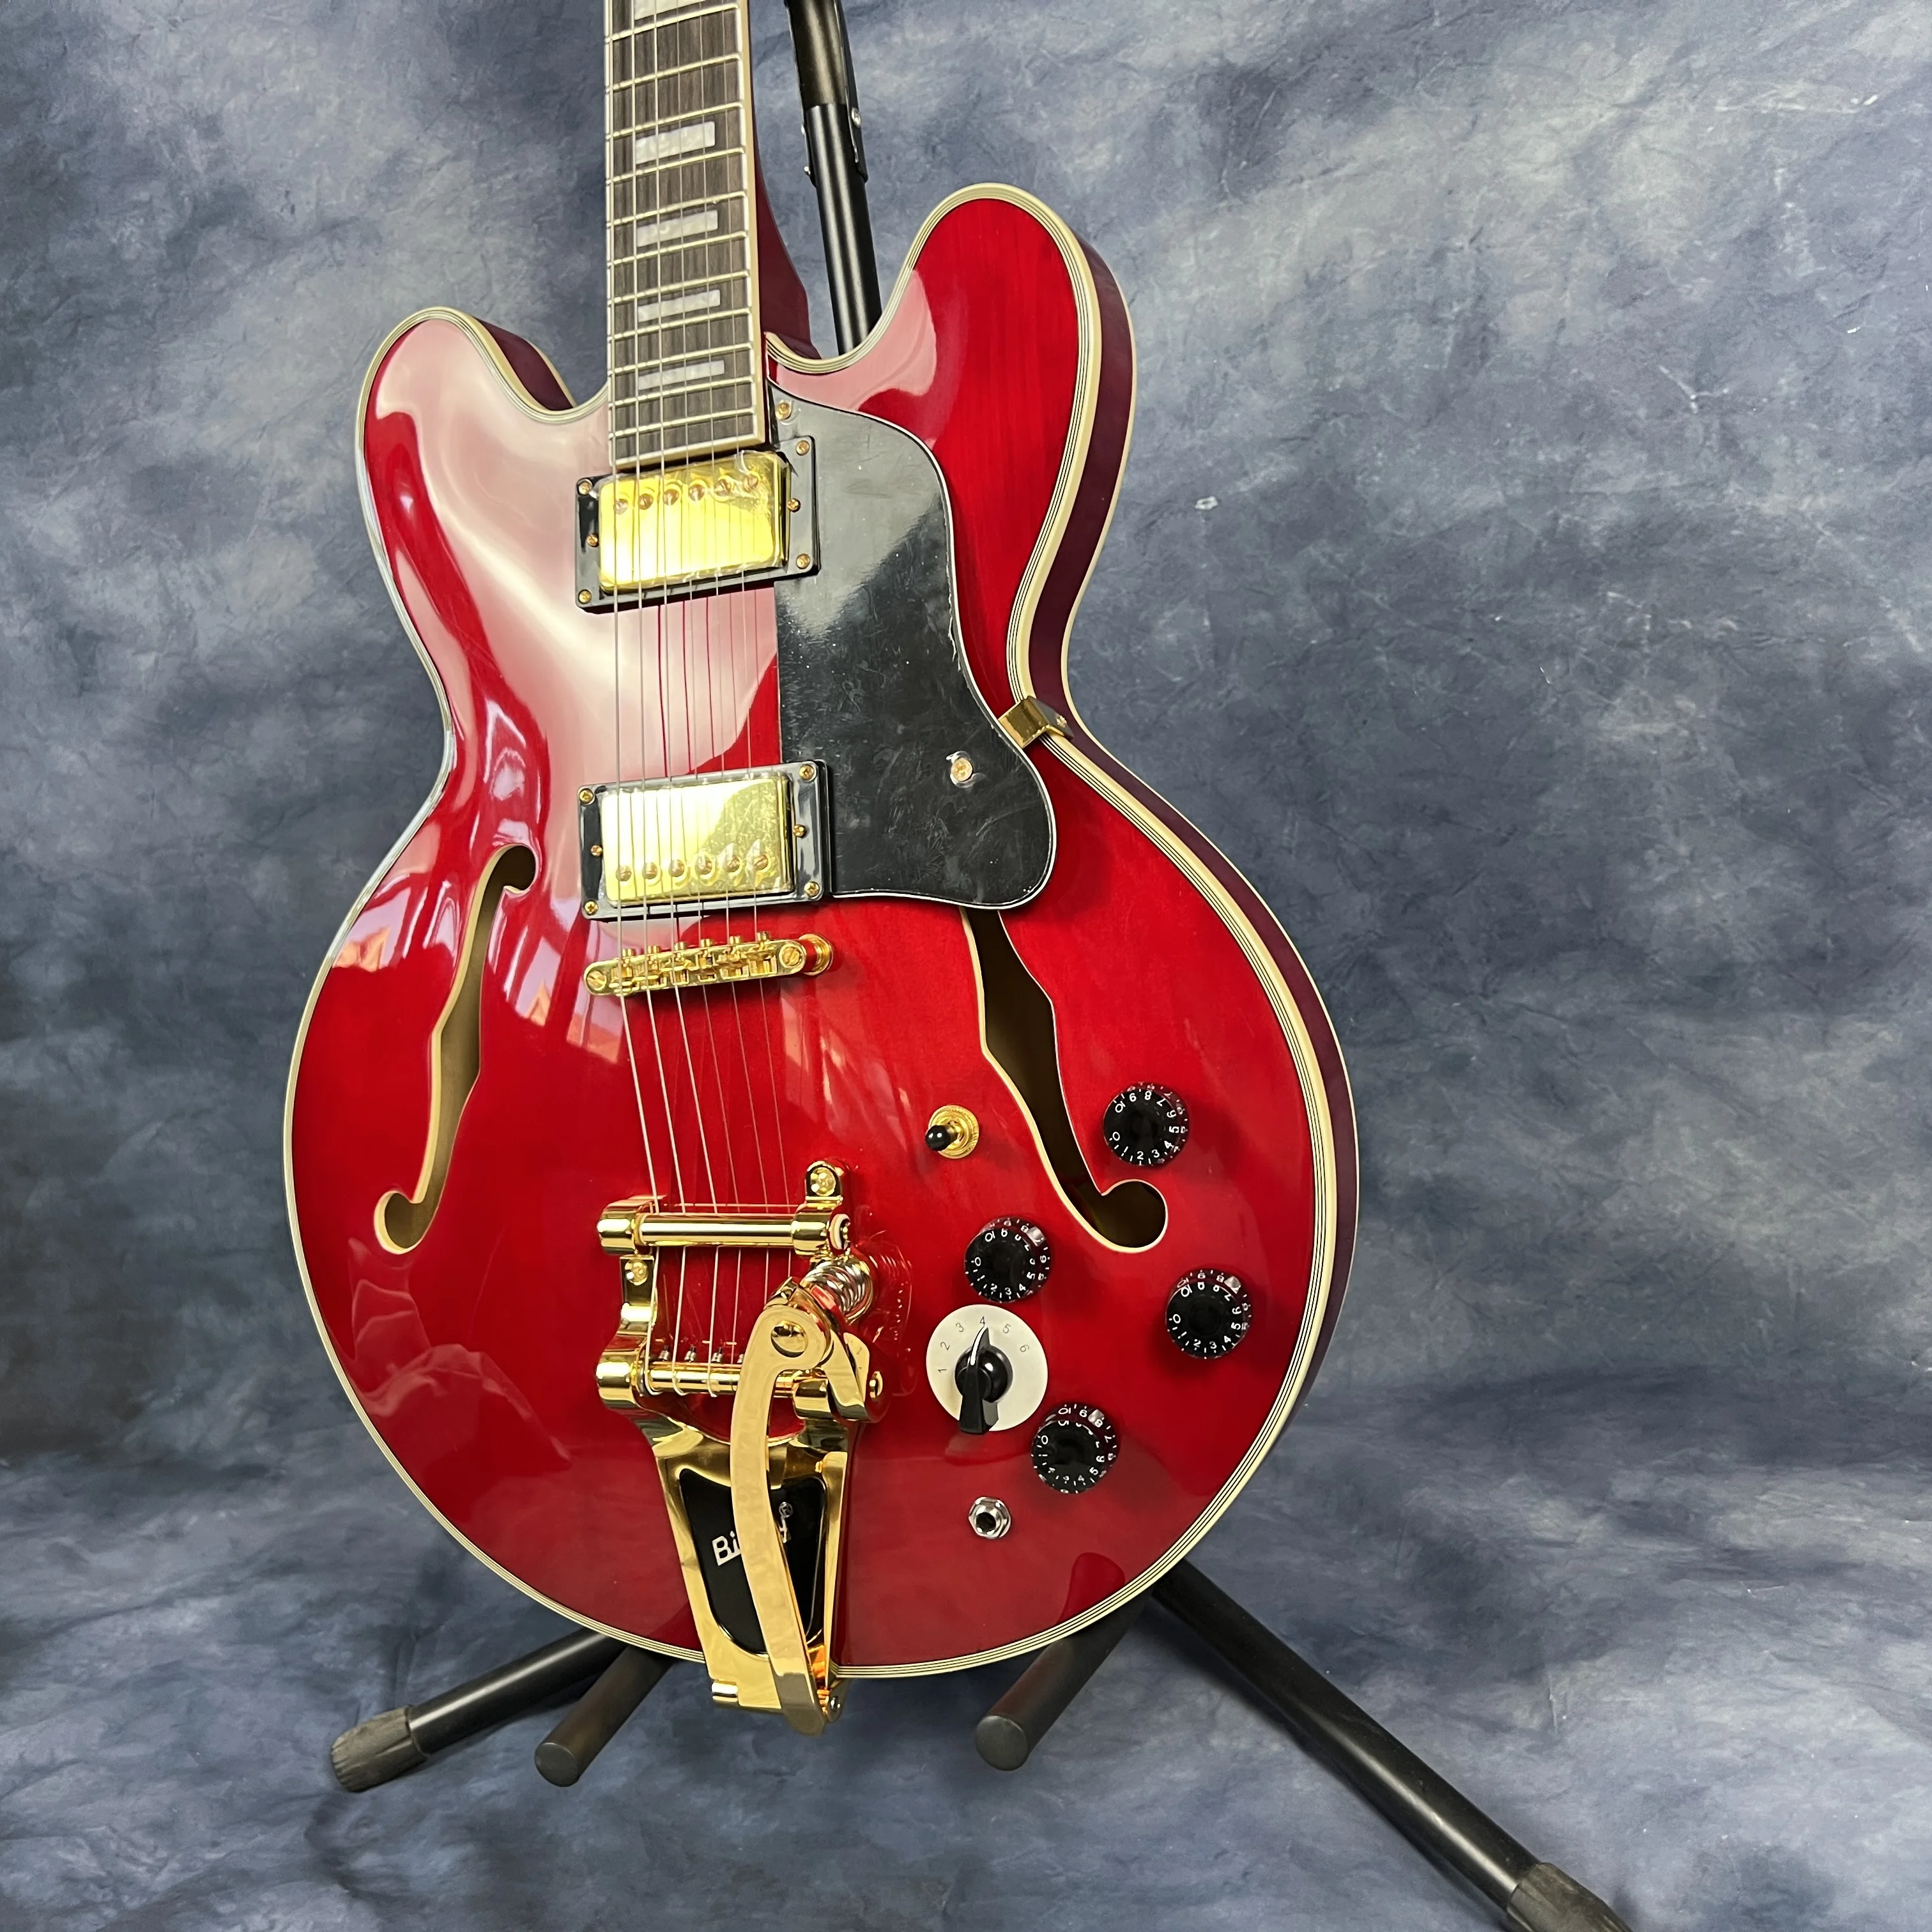 

Высококачественная джазовая электрическая гитара, красного цвета, полуполый корпус, гитара Vibrato tremolo, высококачественные звукосниматели